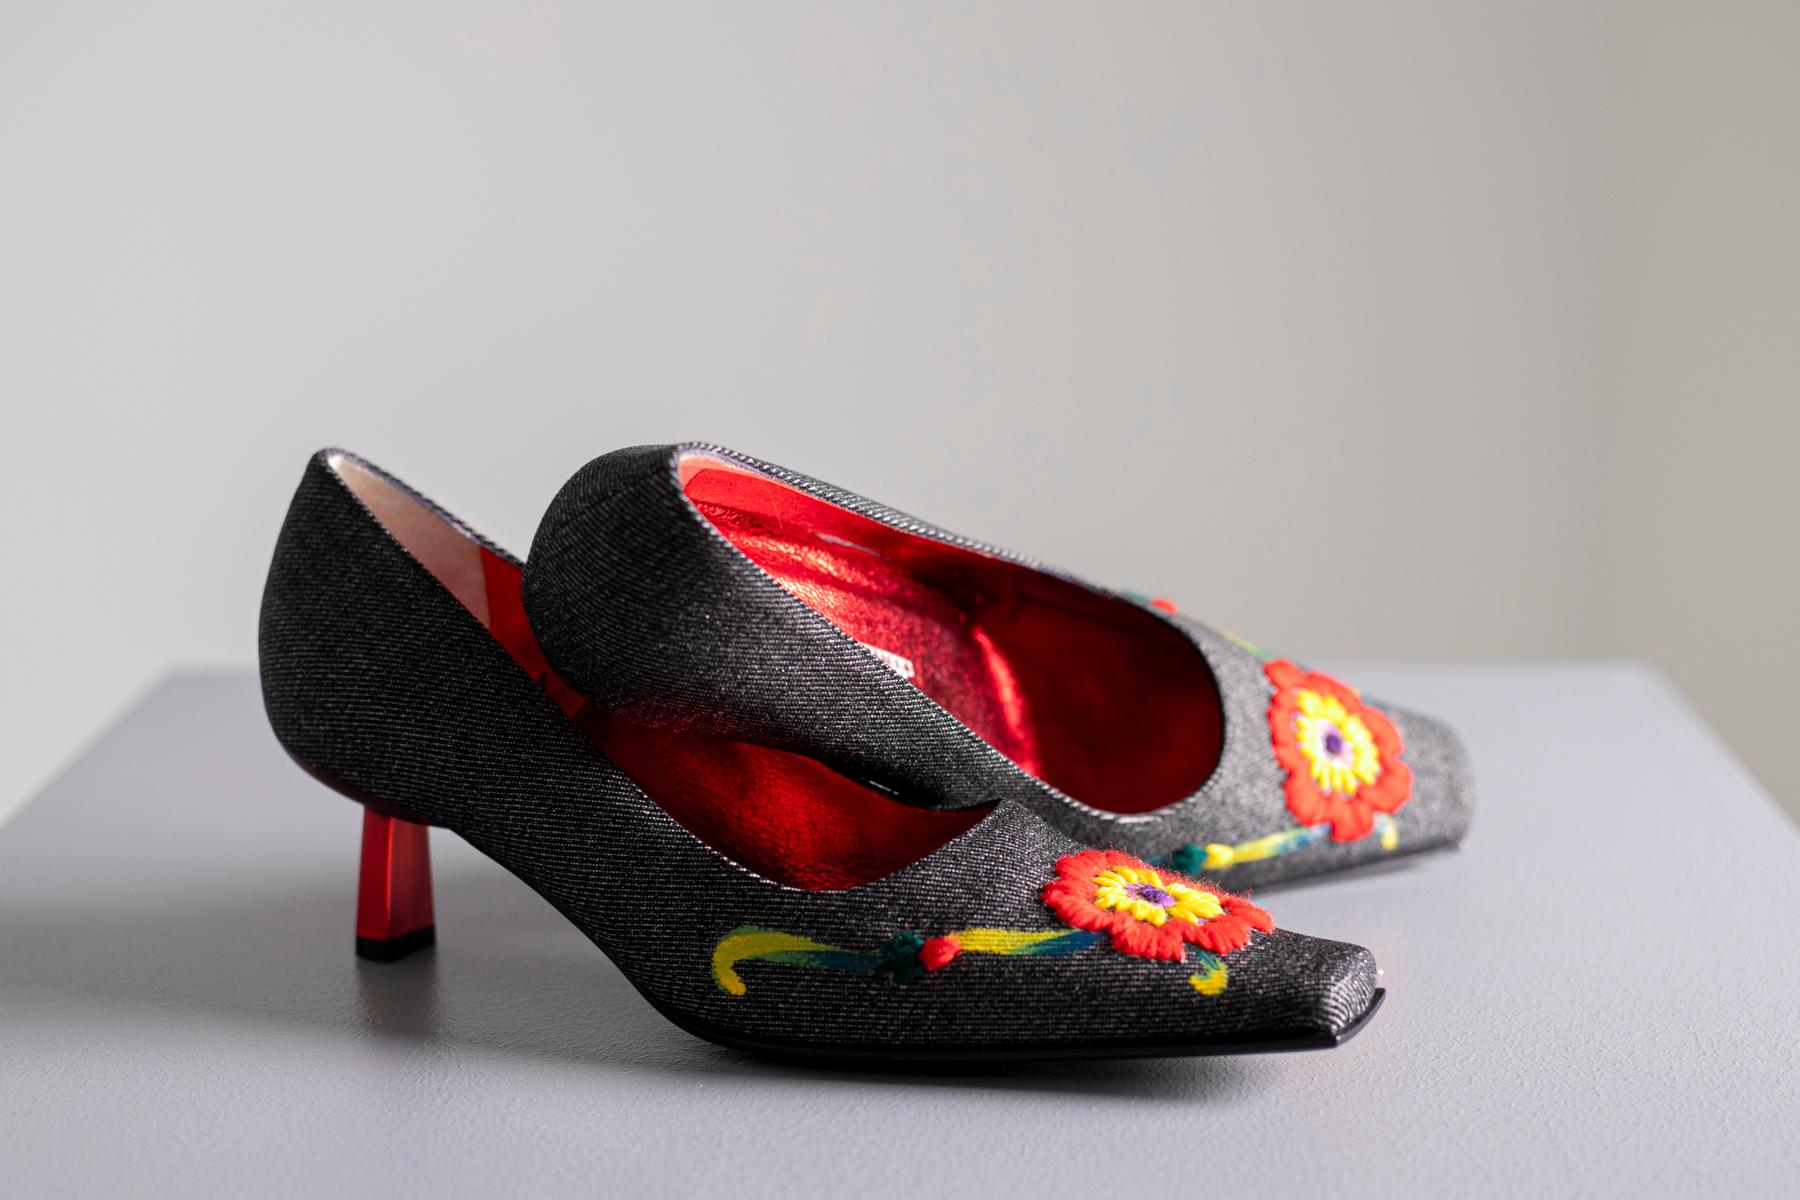 Chaussures très spéciales pour femmes Giuseppe Zanotti. Fabrication extraordinaire, les chaussures sont doublées de toile rigide et ont des fleurs jaunes et rouges brodées sur le bout et des détails à la détrempe qui les font ressembler à une œuvre